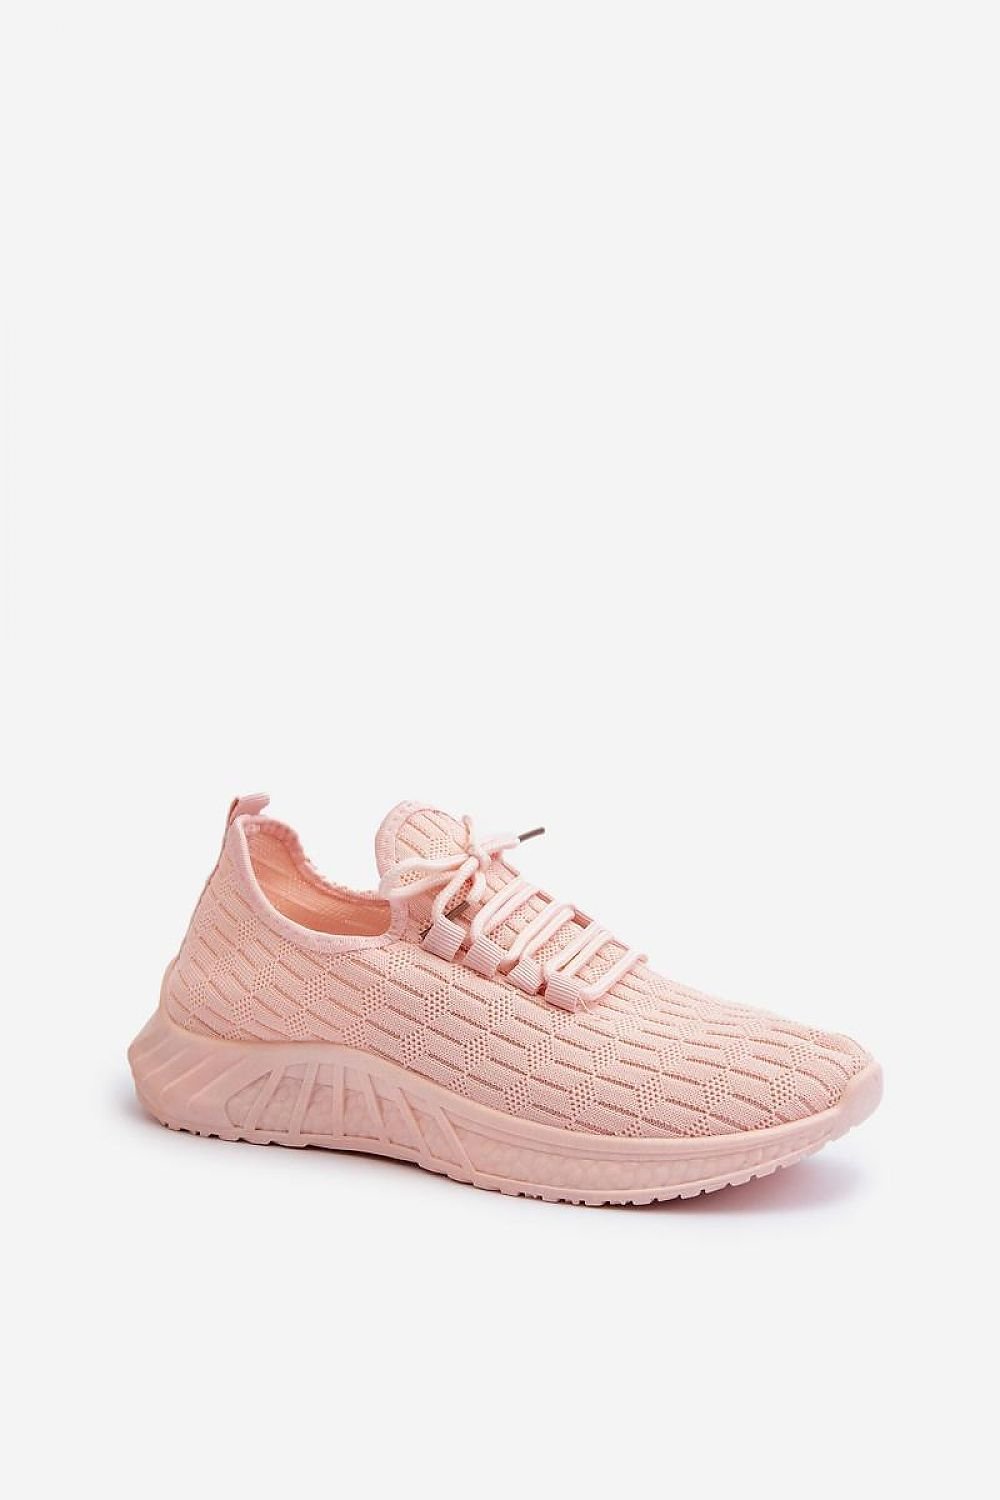 TEEK - Sock Lace Sneakers SHOES TEEK MH pink 6.5 